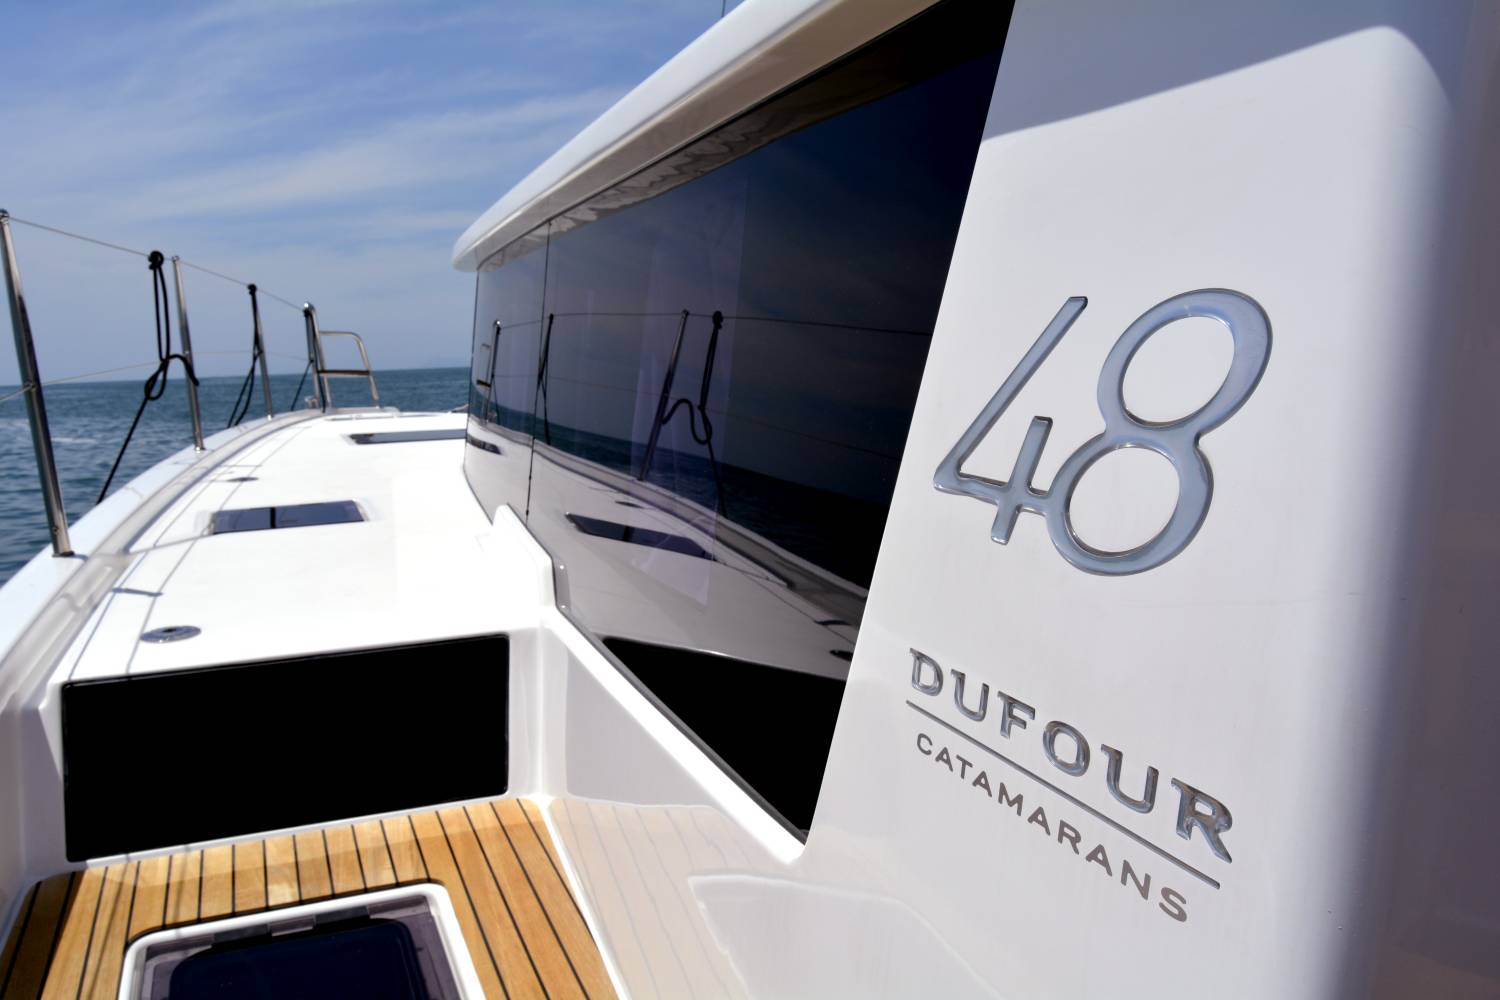 Dufour Catamaran 48